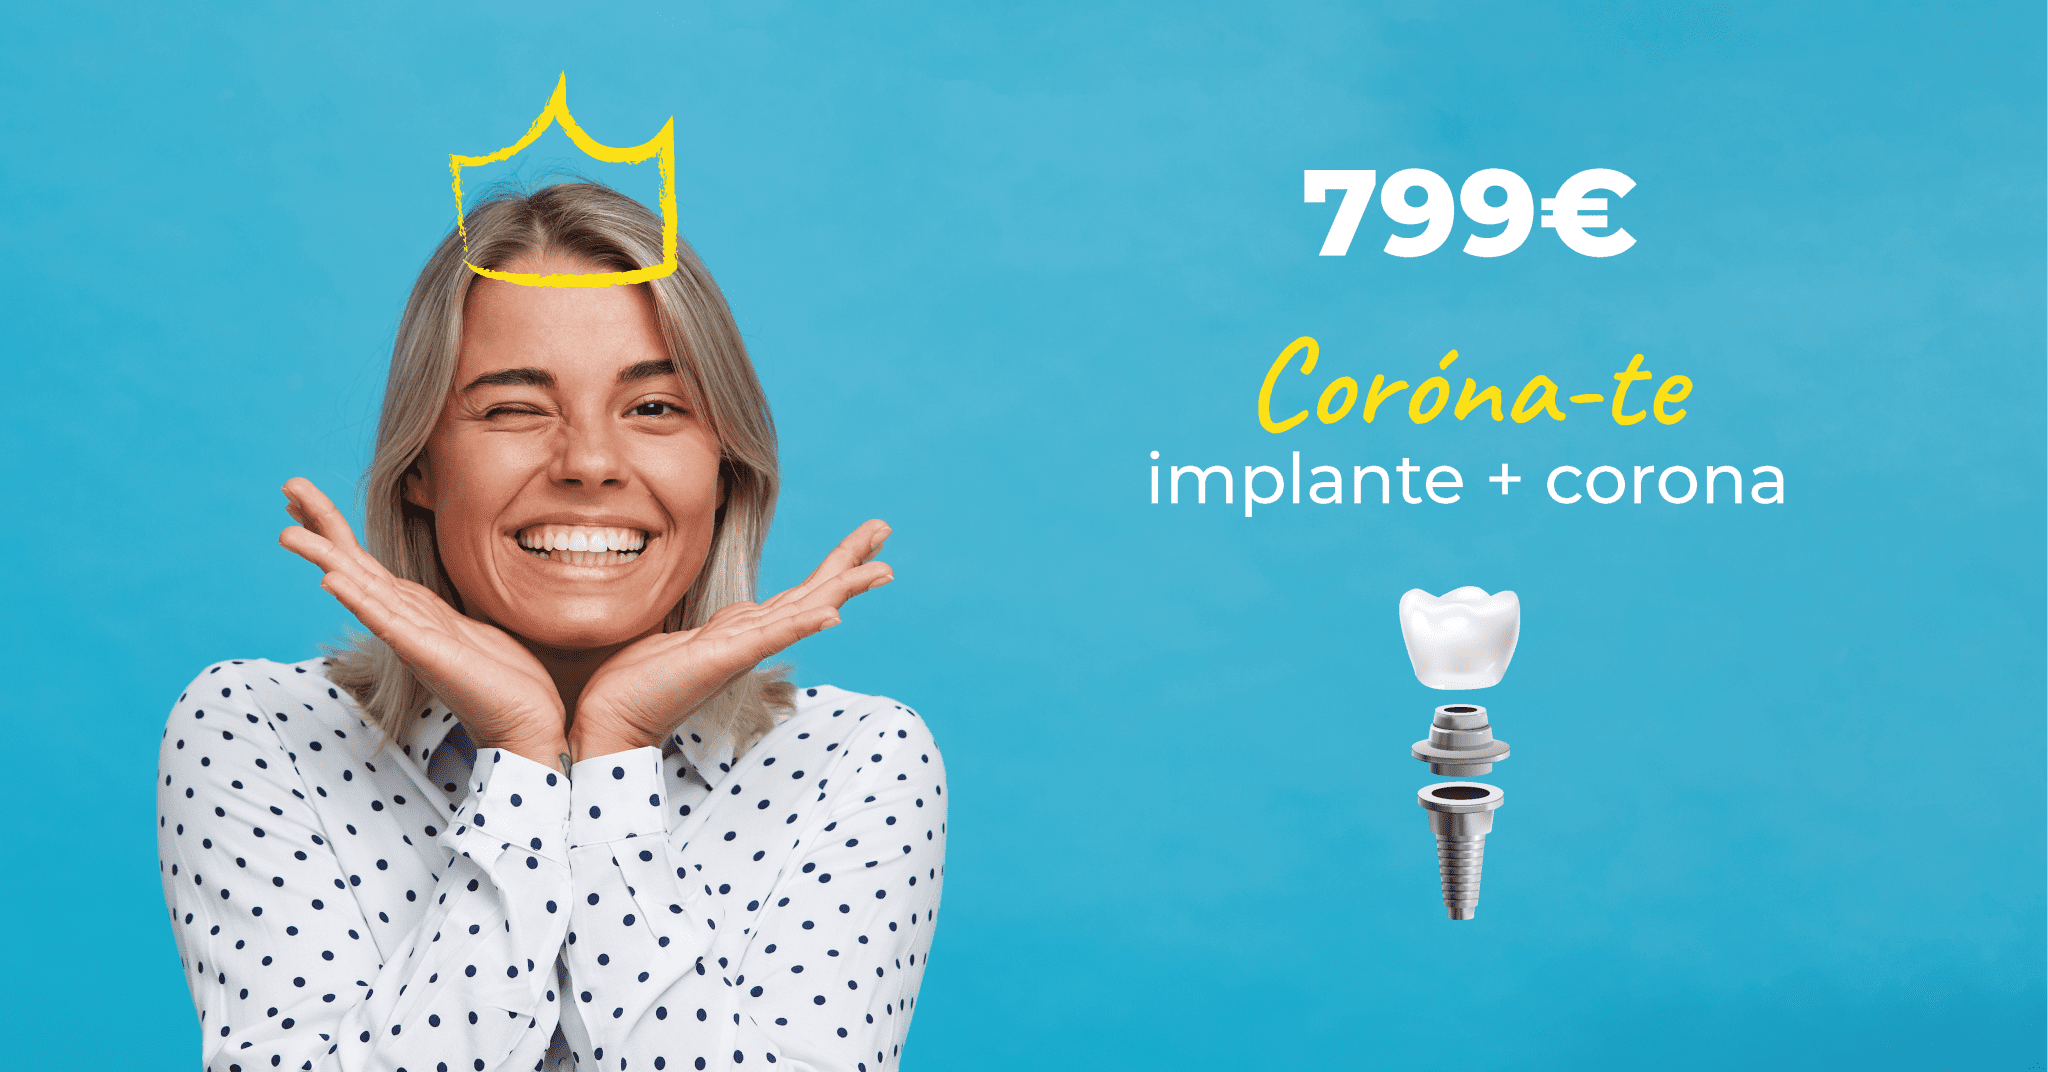 Imagen publicitaria con una mujer sonriente y una corona dibujada, fondo azul y texto de oferta para un implante dental más corona por 799€, junto a ilustraciones de los componentes dentales.